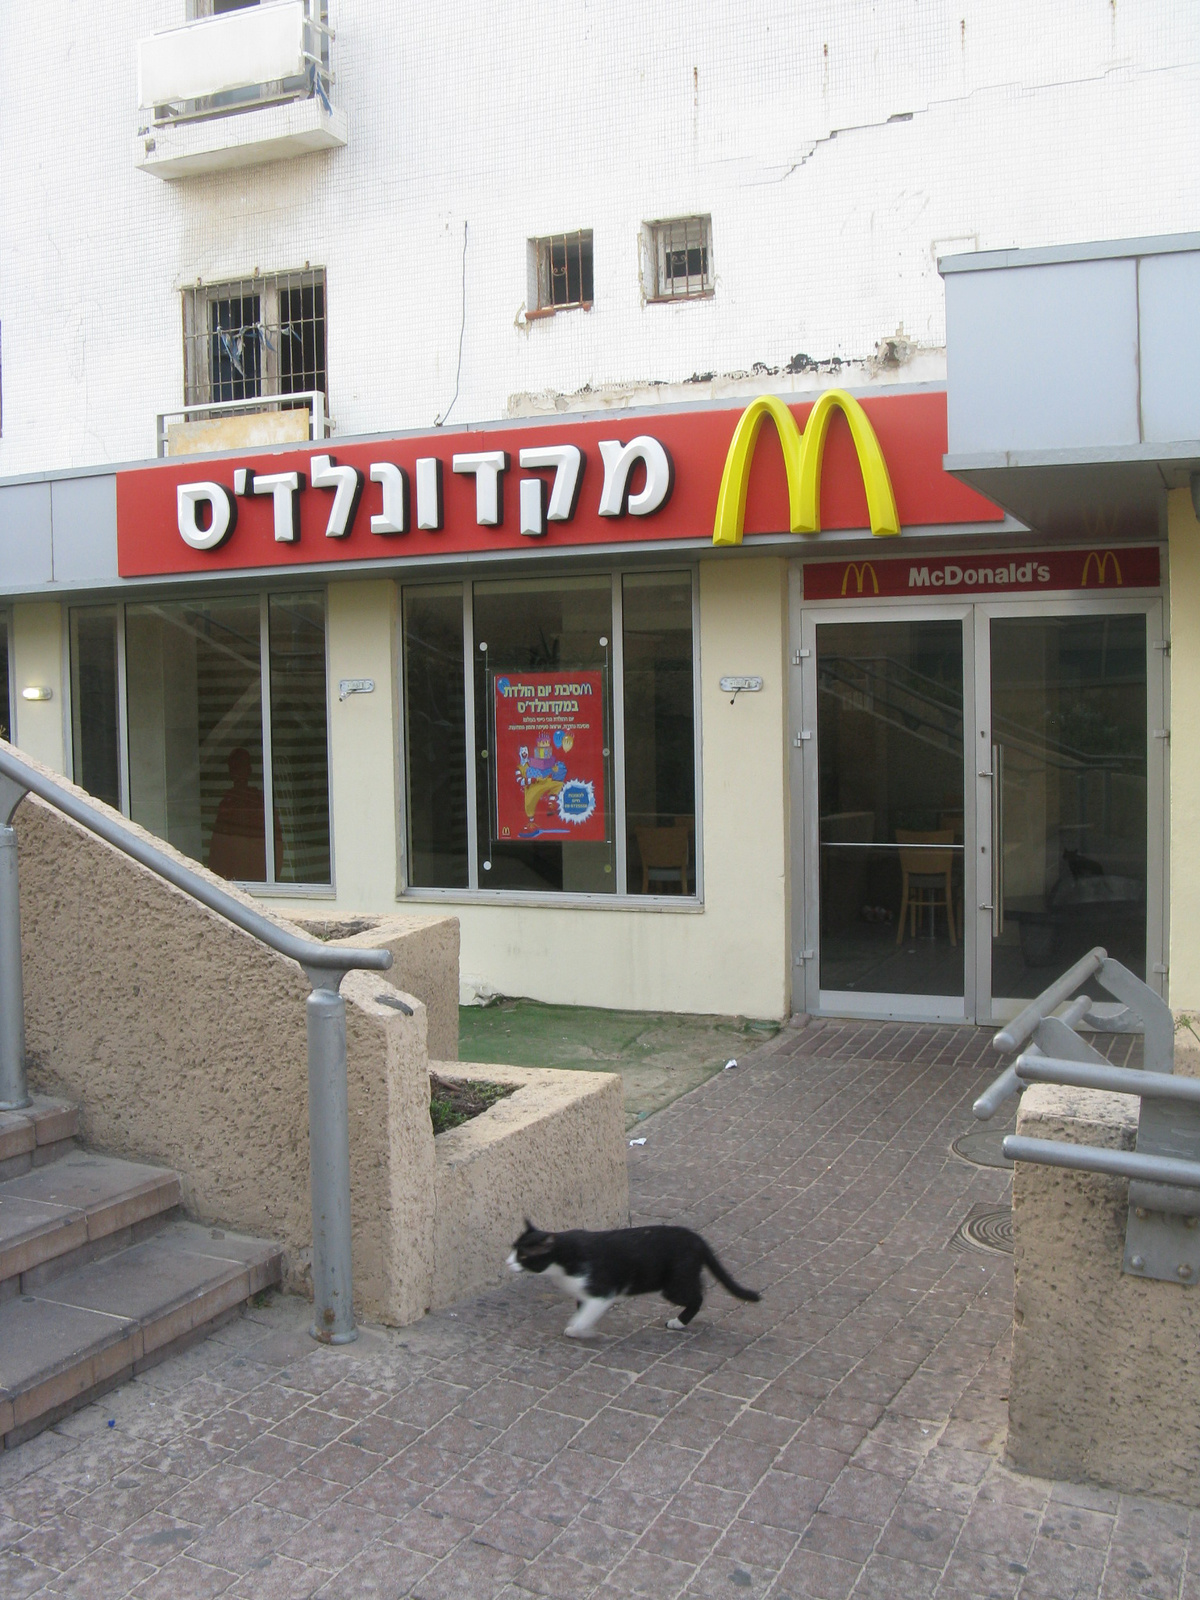 McDonalds and a cat